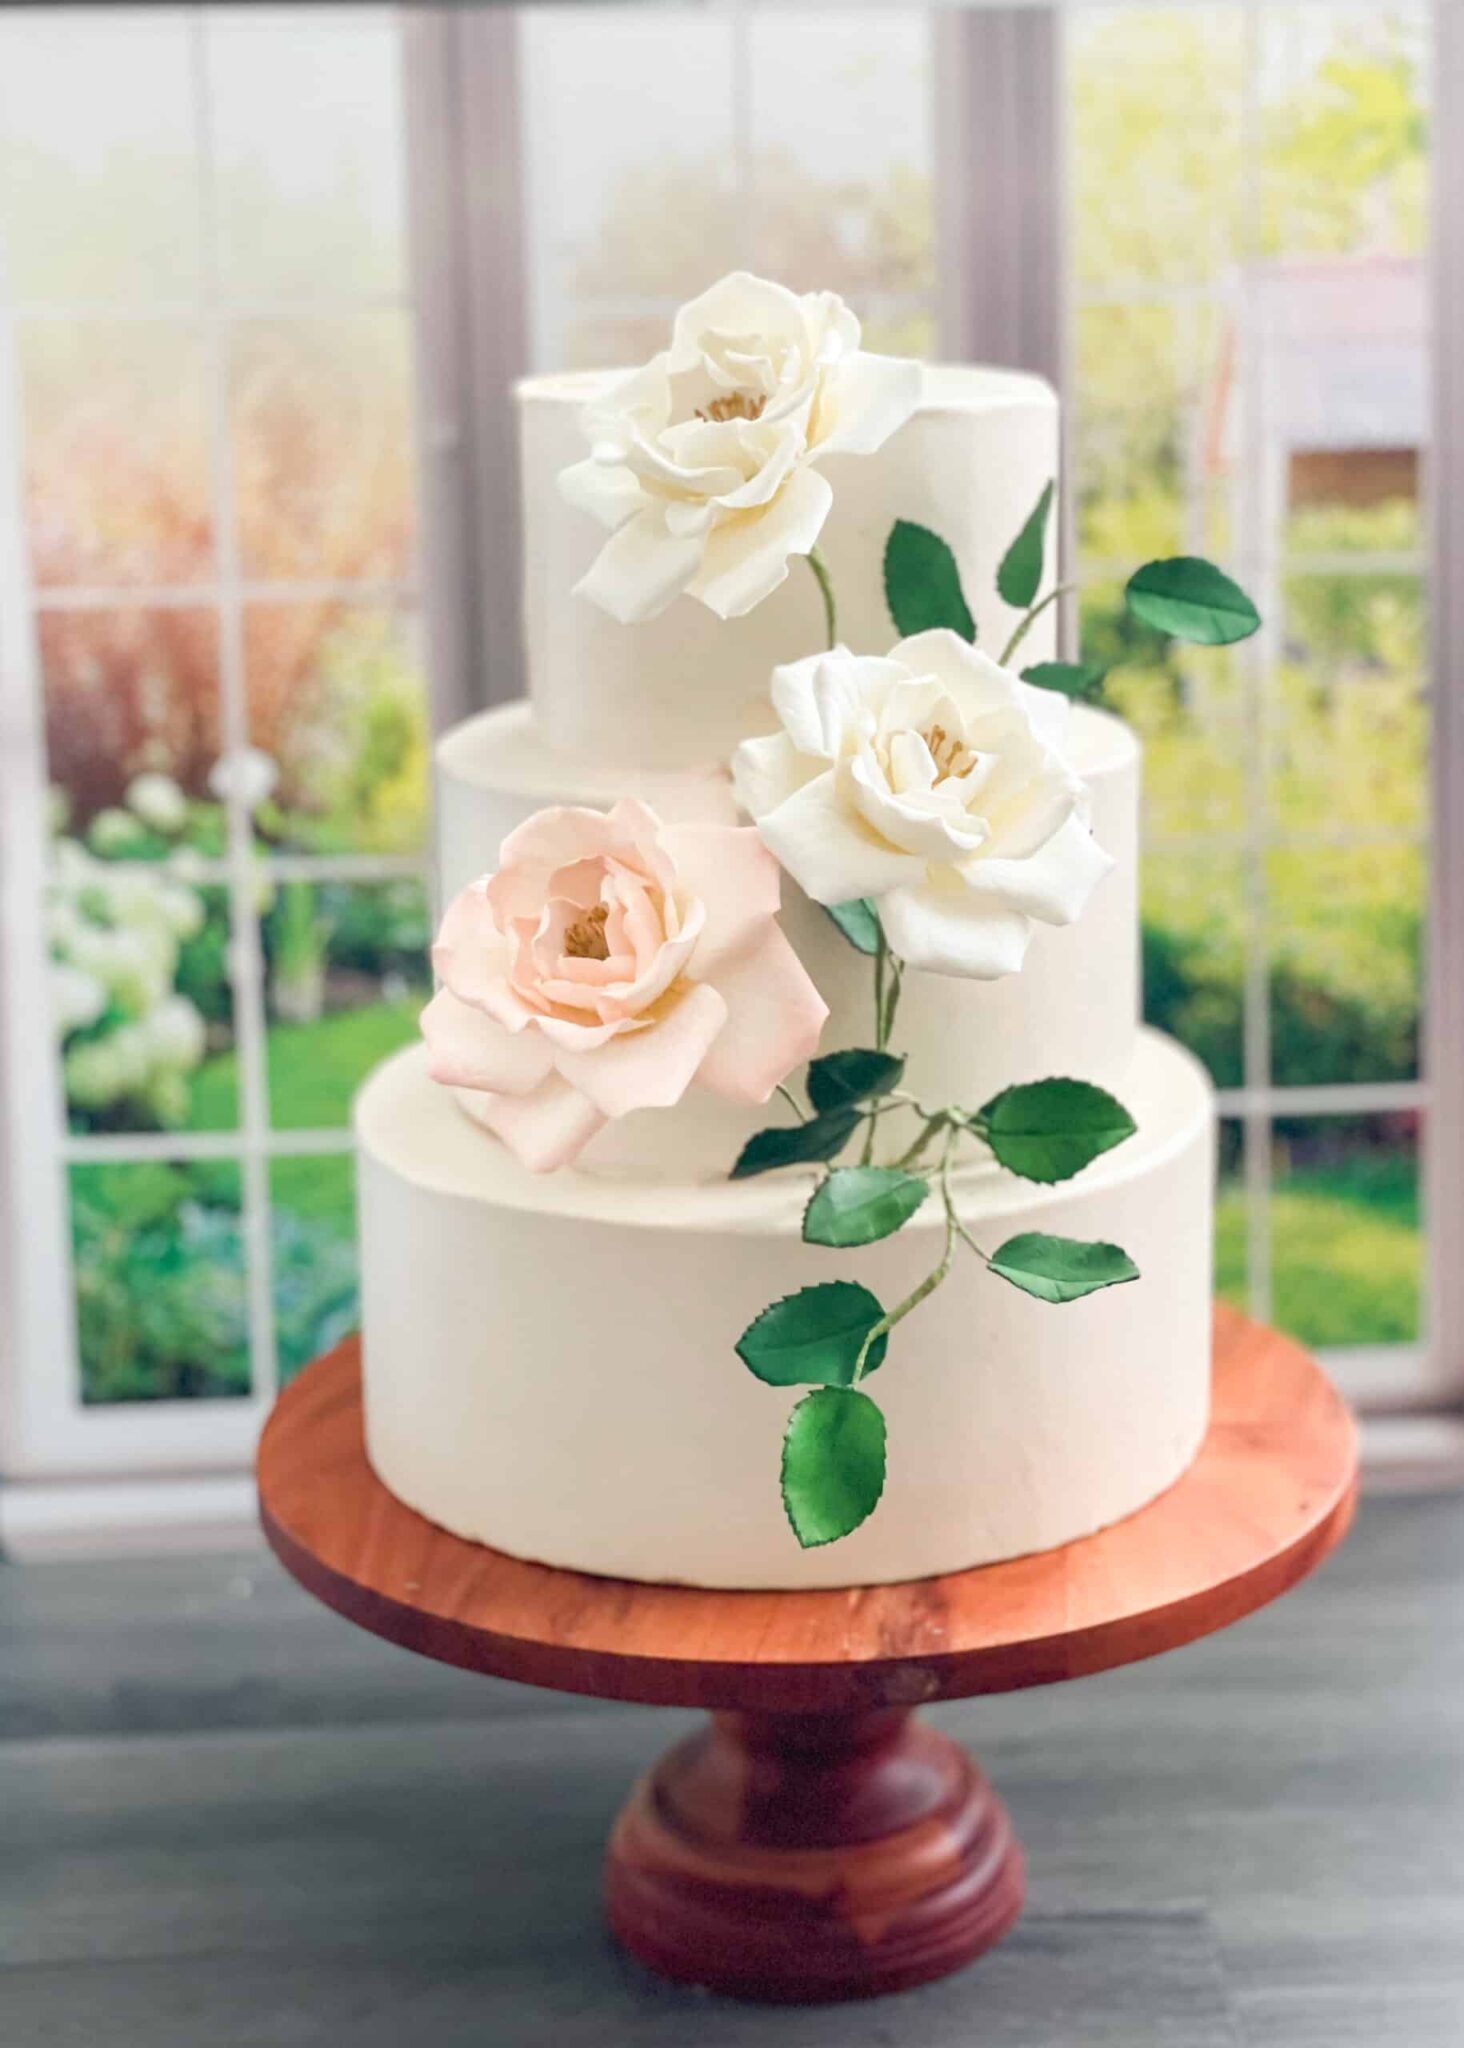 NEW - Semi-Custom Design Options Sugar Flowers by Kelsie Cakes